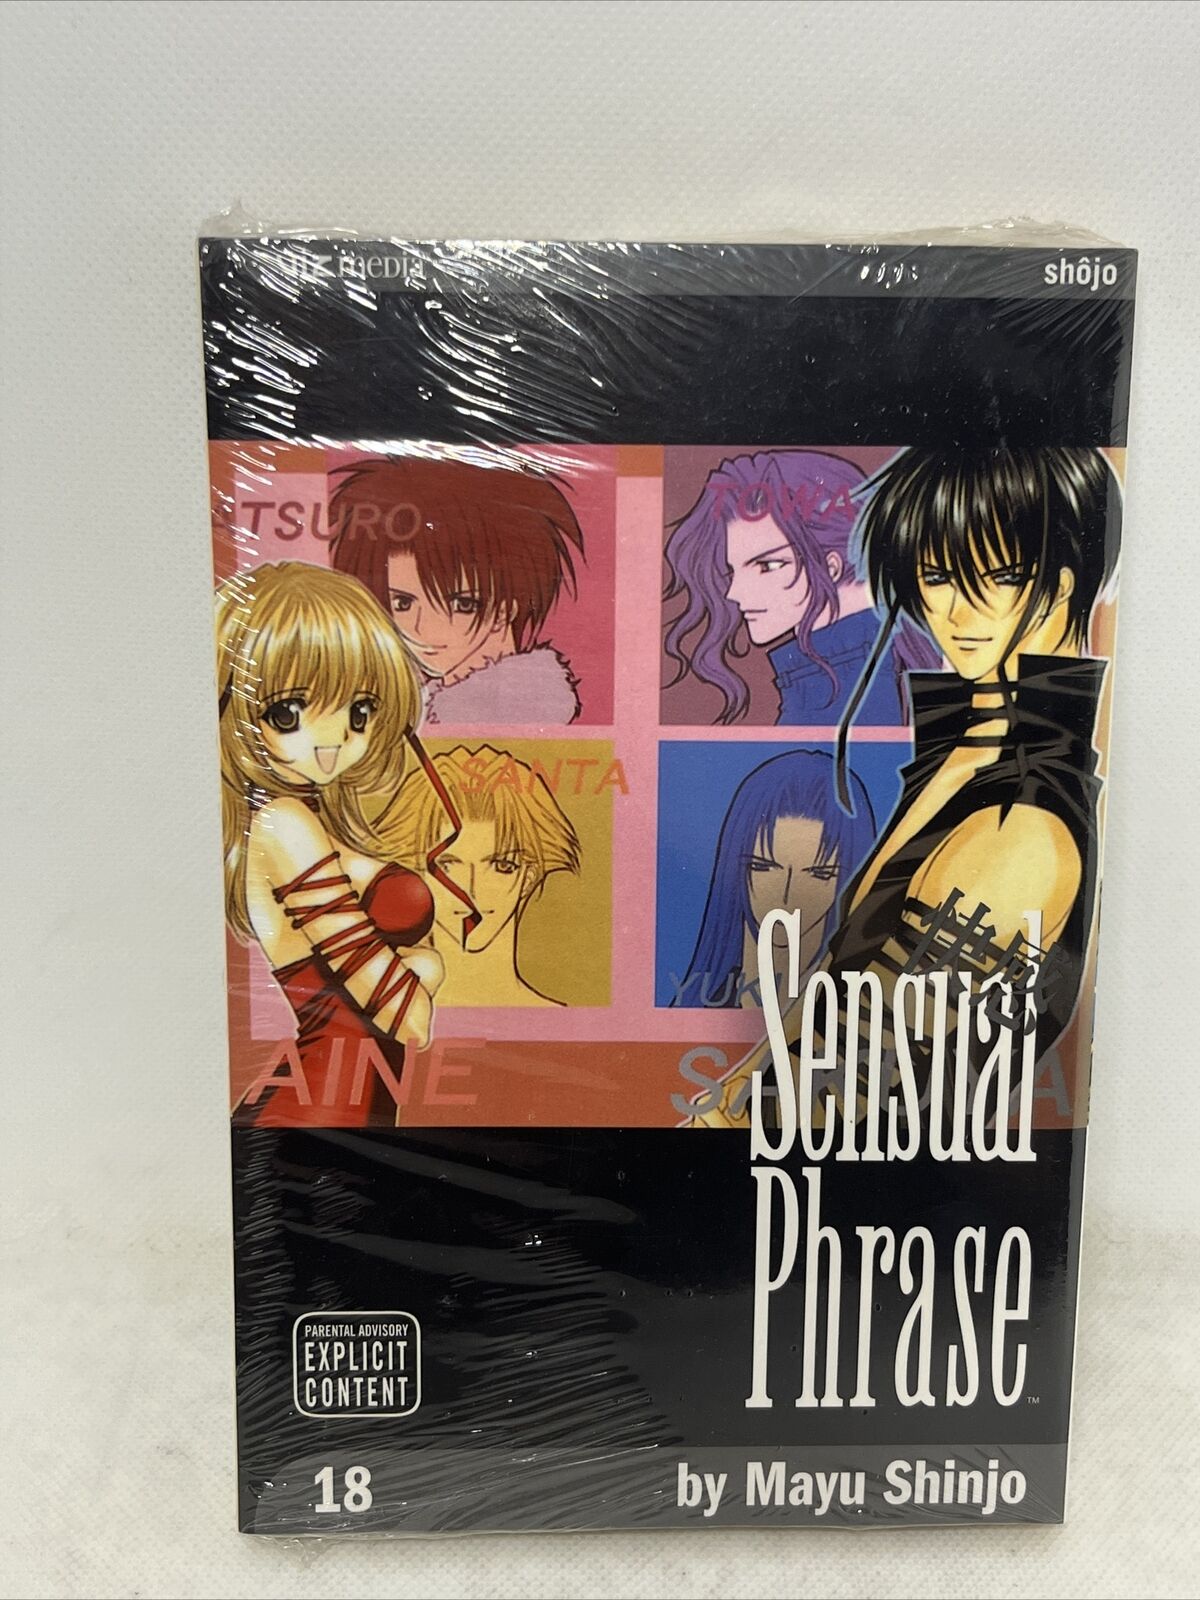 SEALED Sensual Phrase Volume 18 English Manga 2017 Viz Paperback Book